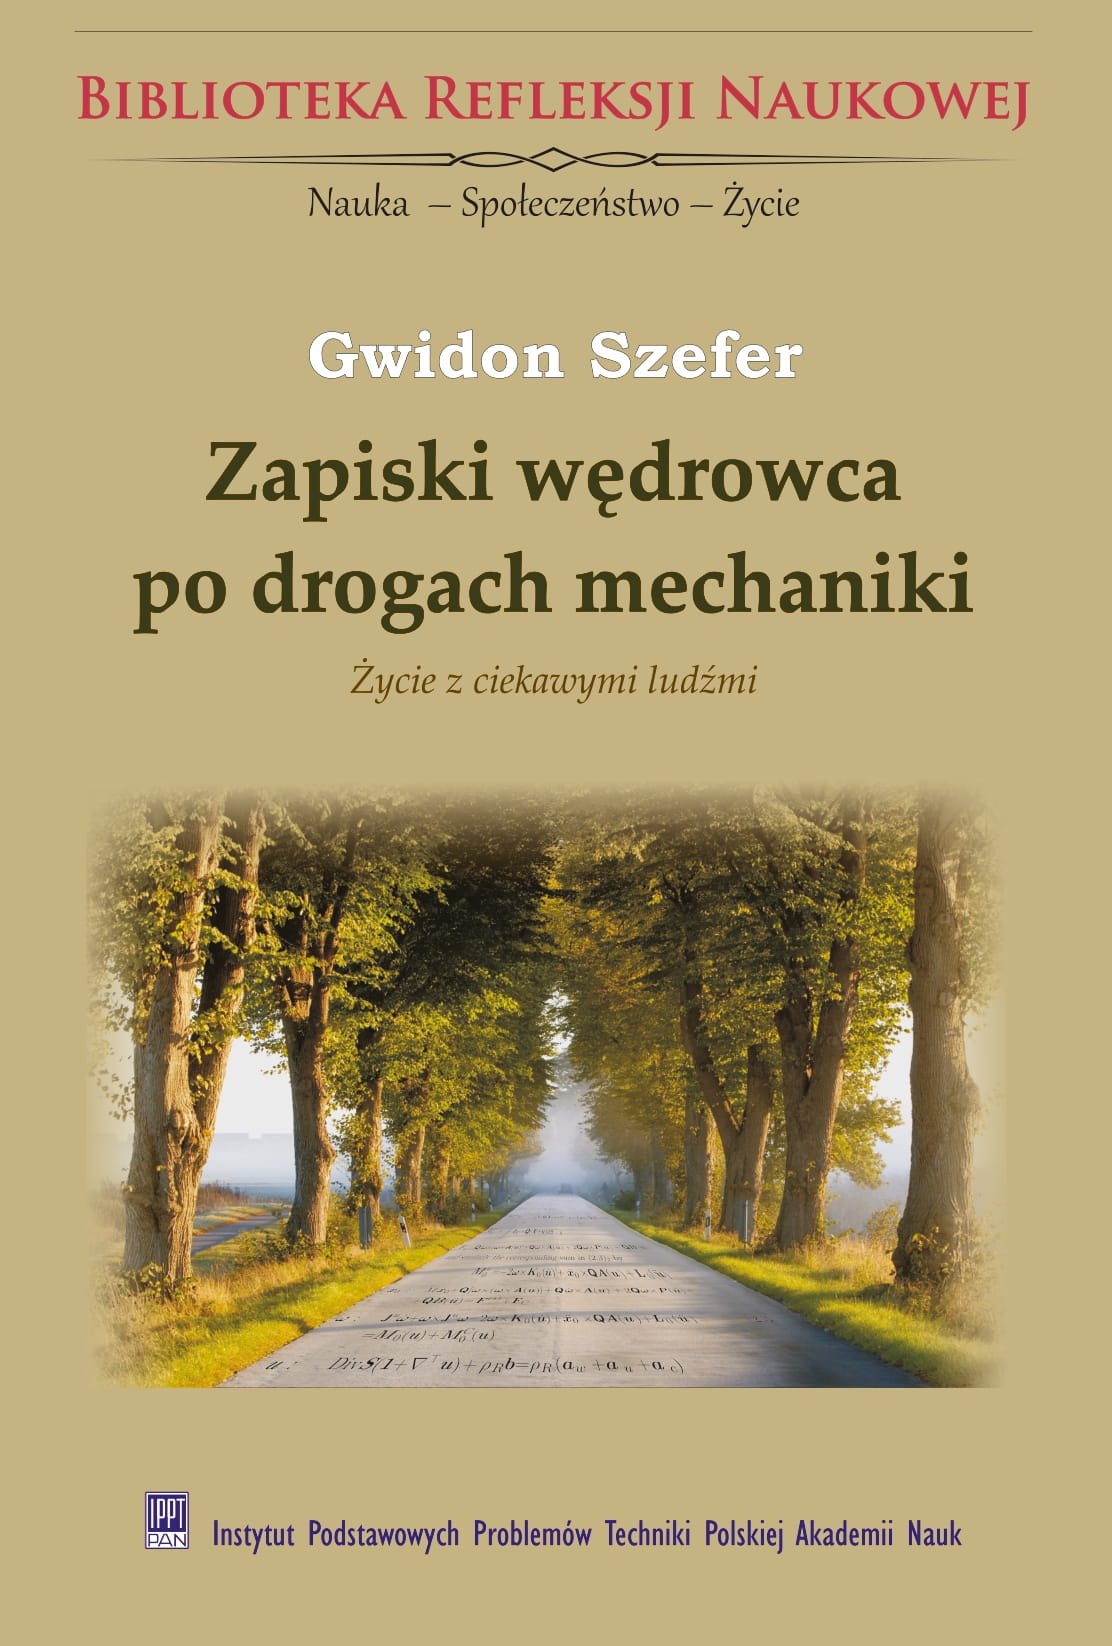 Notes of a wanderer on the roads of mechanics. Life with interesting people<br/>
(in Polish: Zapiski wędrowca po drogach mechaniki. Życie z ciekawymi ludźmi)